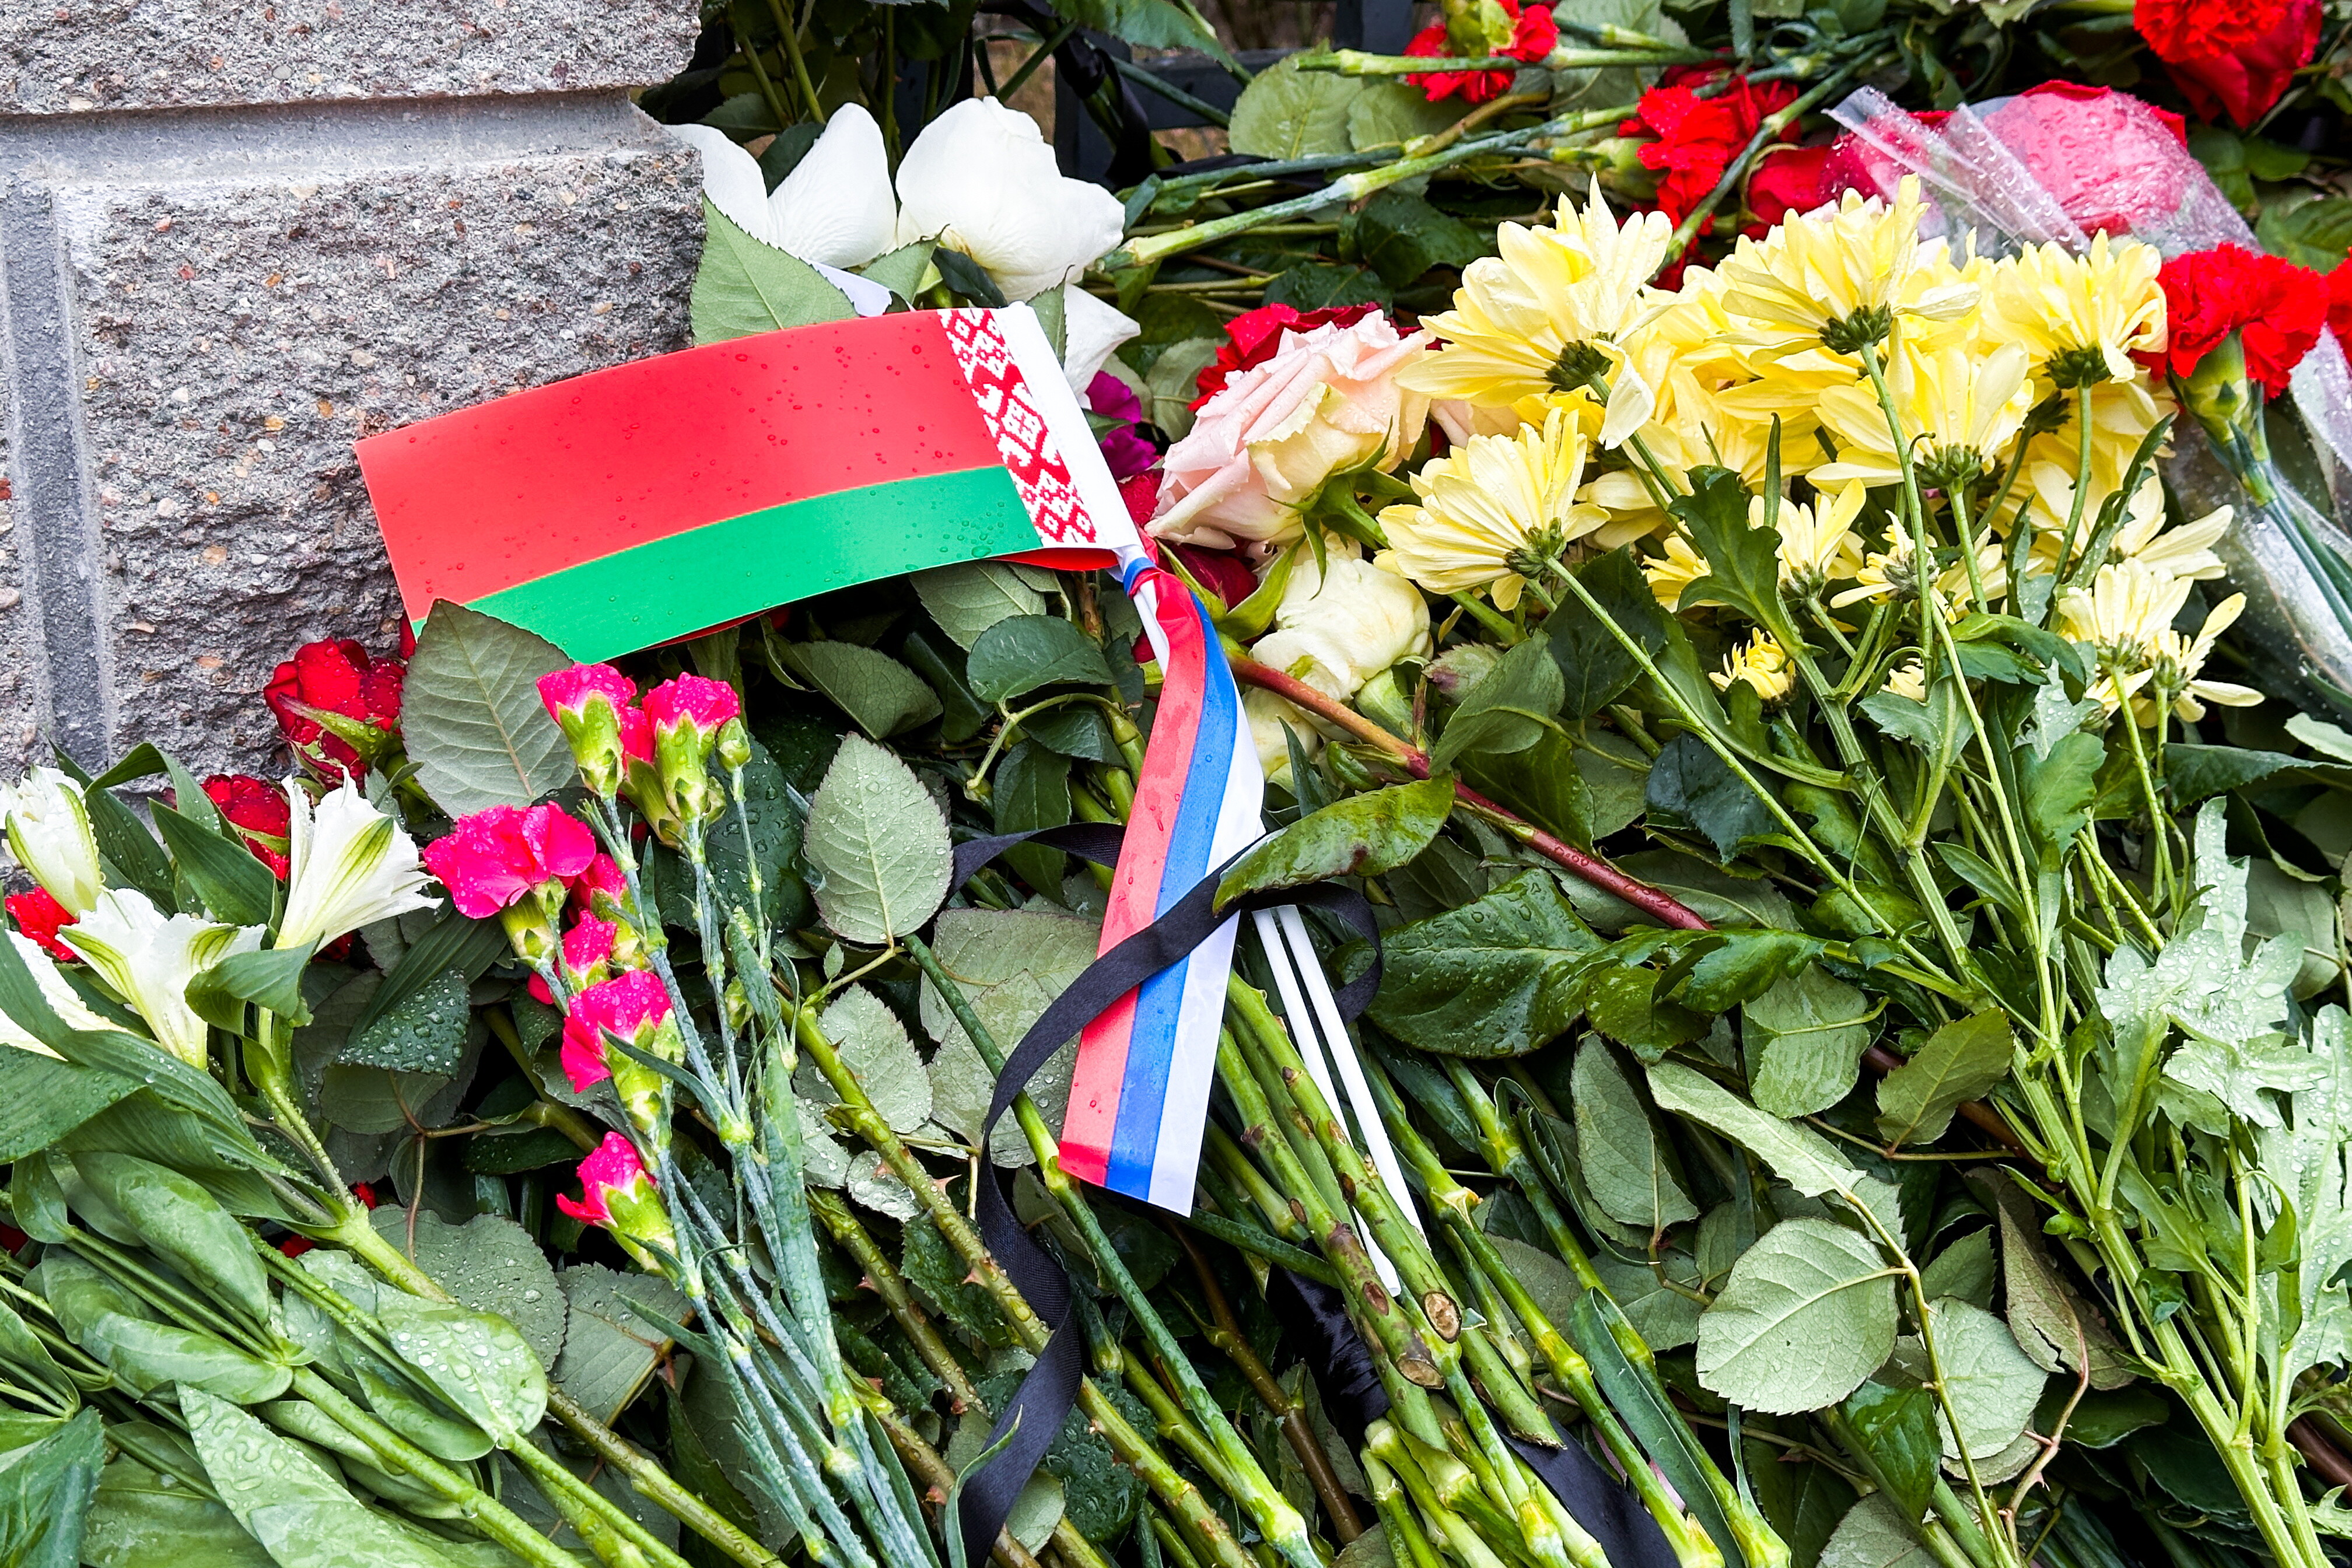 Письма с соболезнованиями отправили жители Беларуси в посольство России